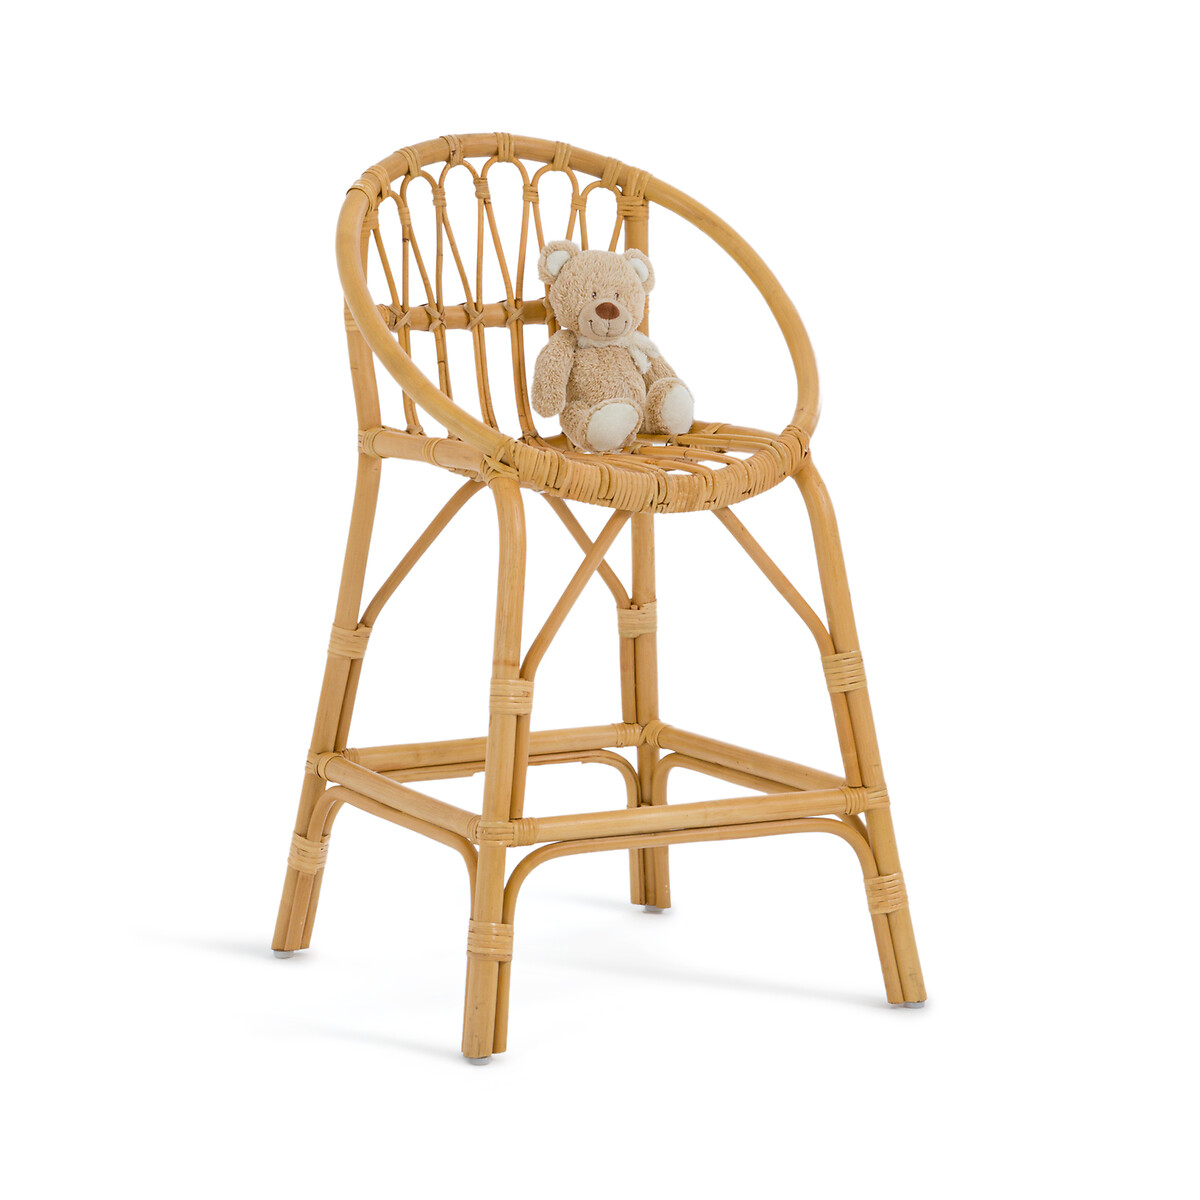 плетеный барный стул из ротанга в стиле ретро высокие деревянные дизайнерские шезлонги из натурального дерева для кухни обеденная стойка Стул высокий детский из ротанга Malu единый размер бежевый